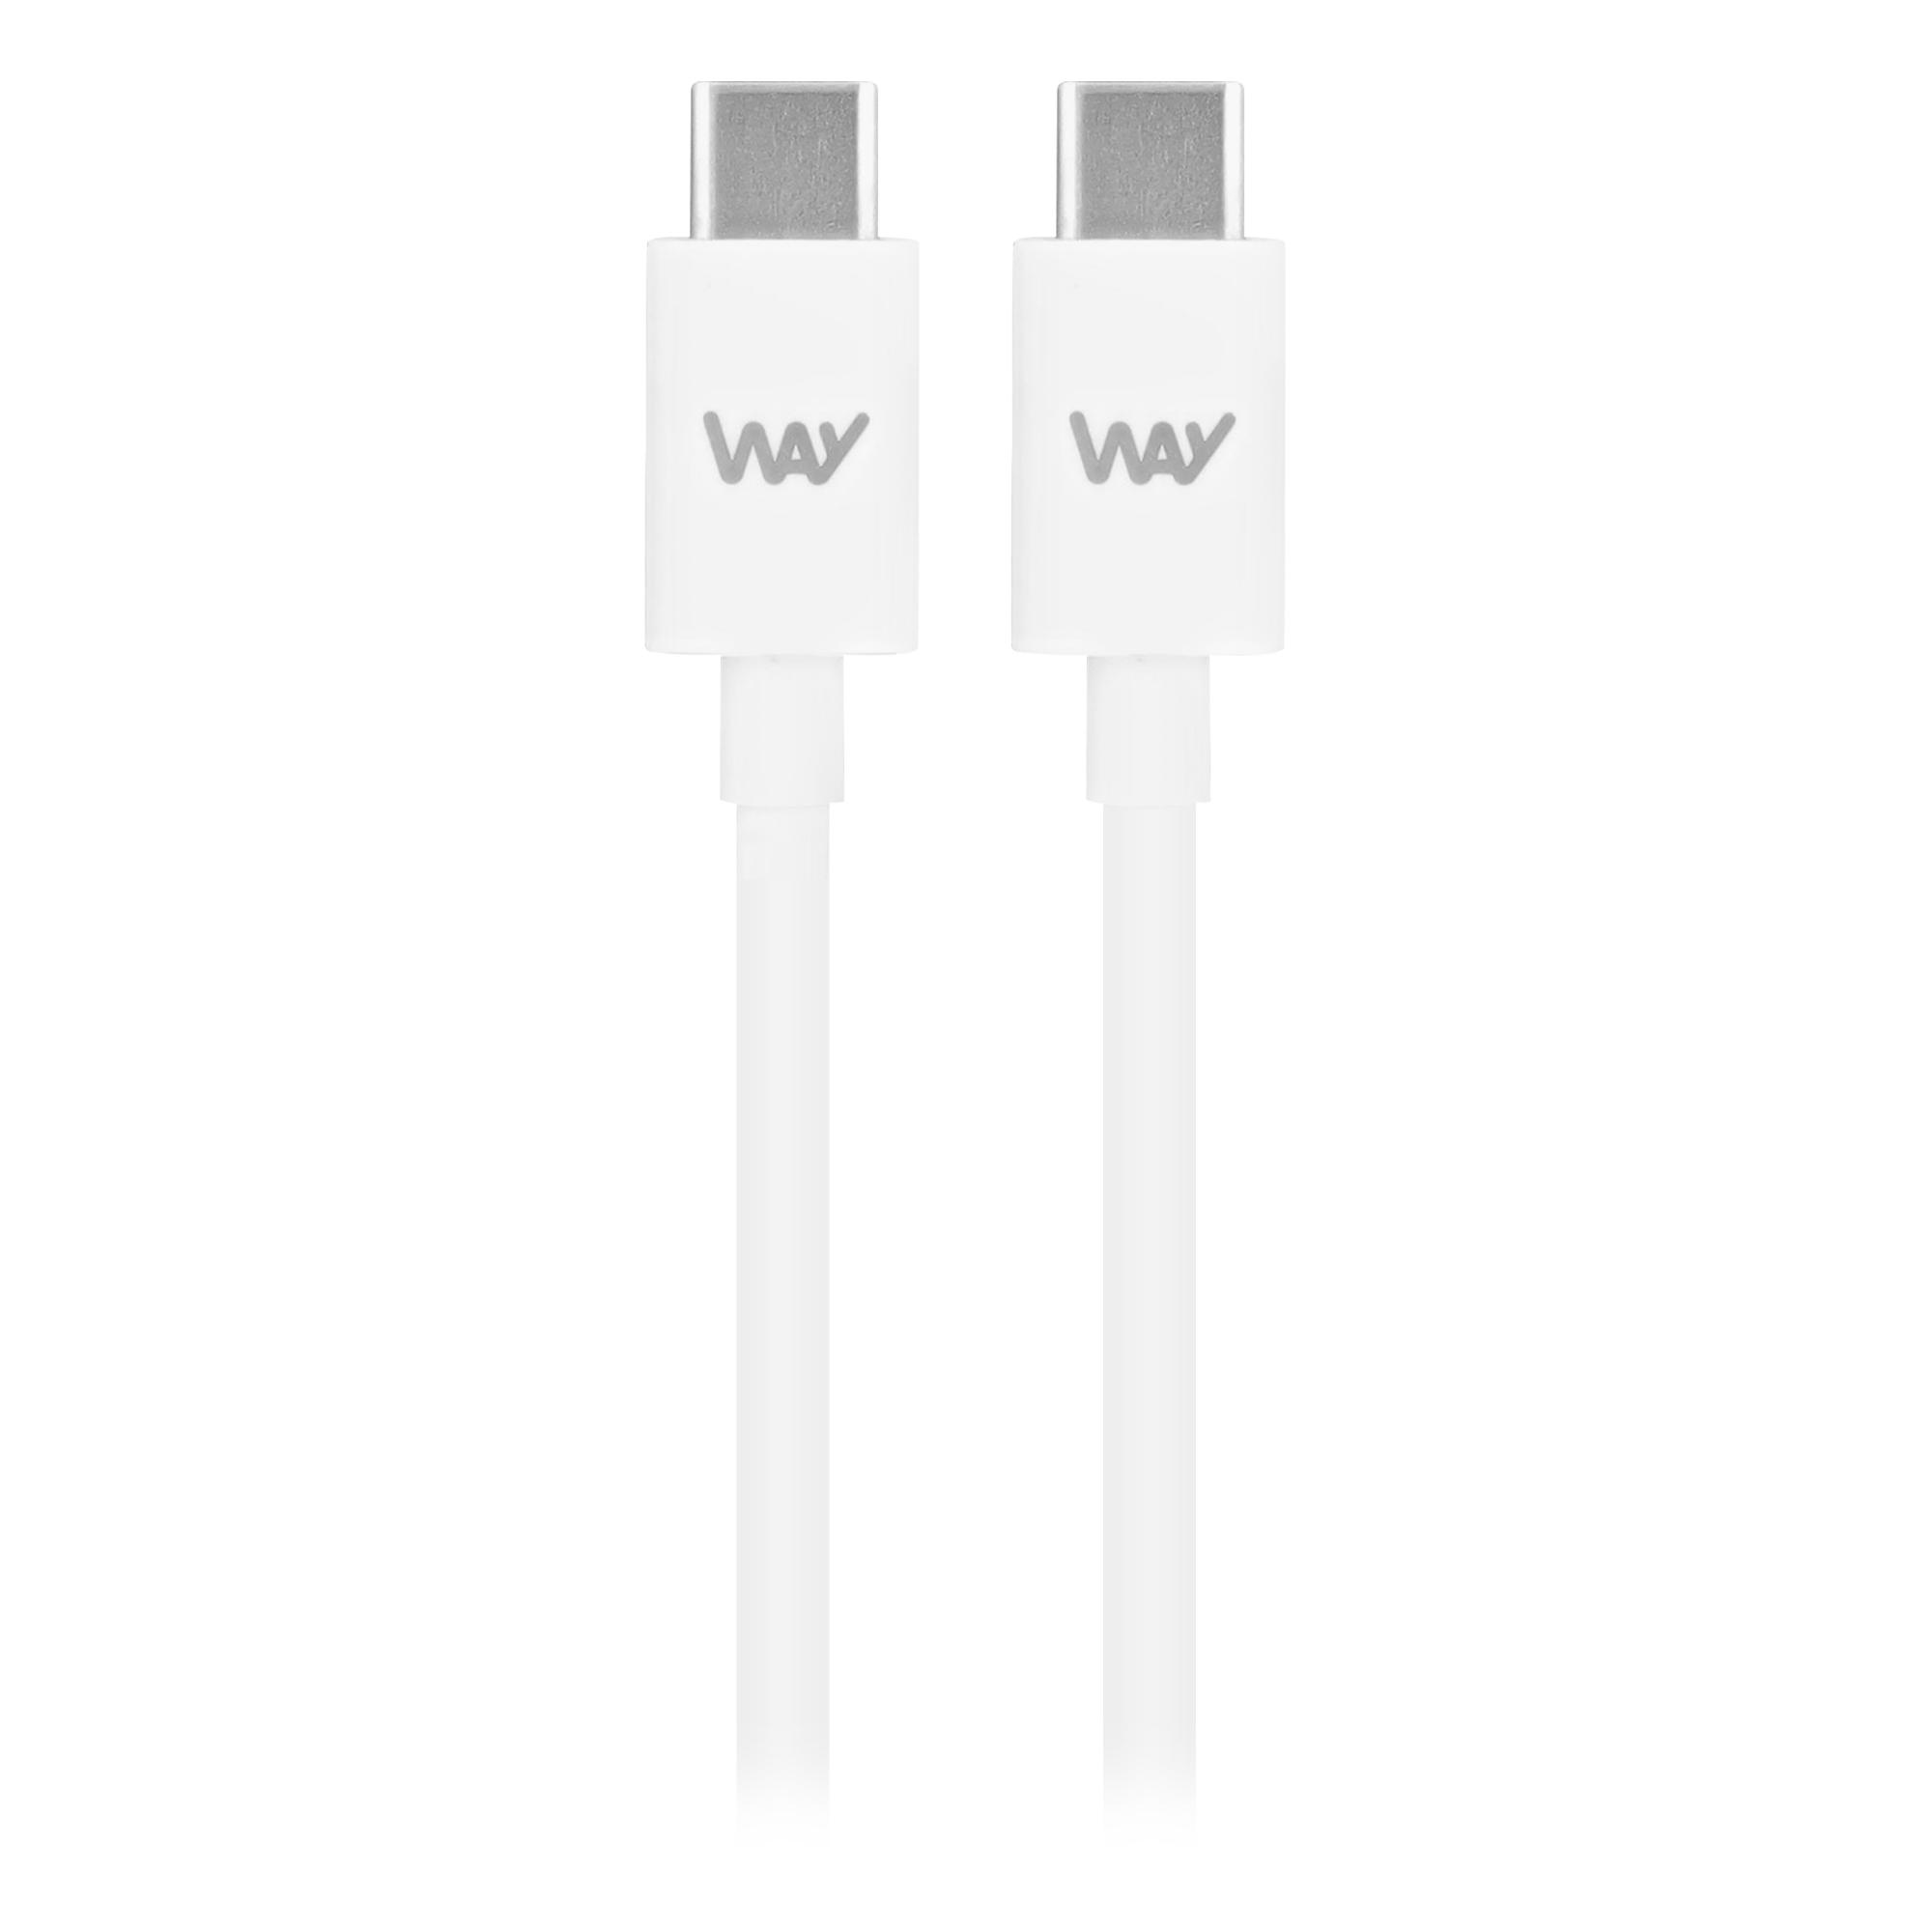 TNB WAY - USB-C/ Cable de carga y sincronización USB-C de 1 m - Blanco